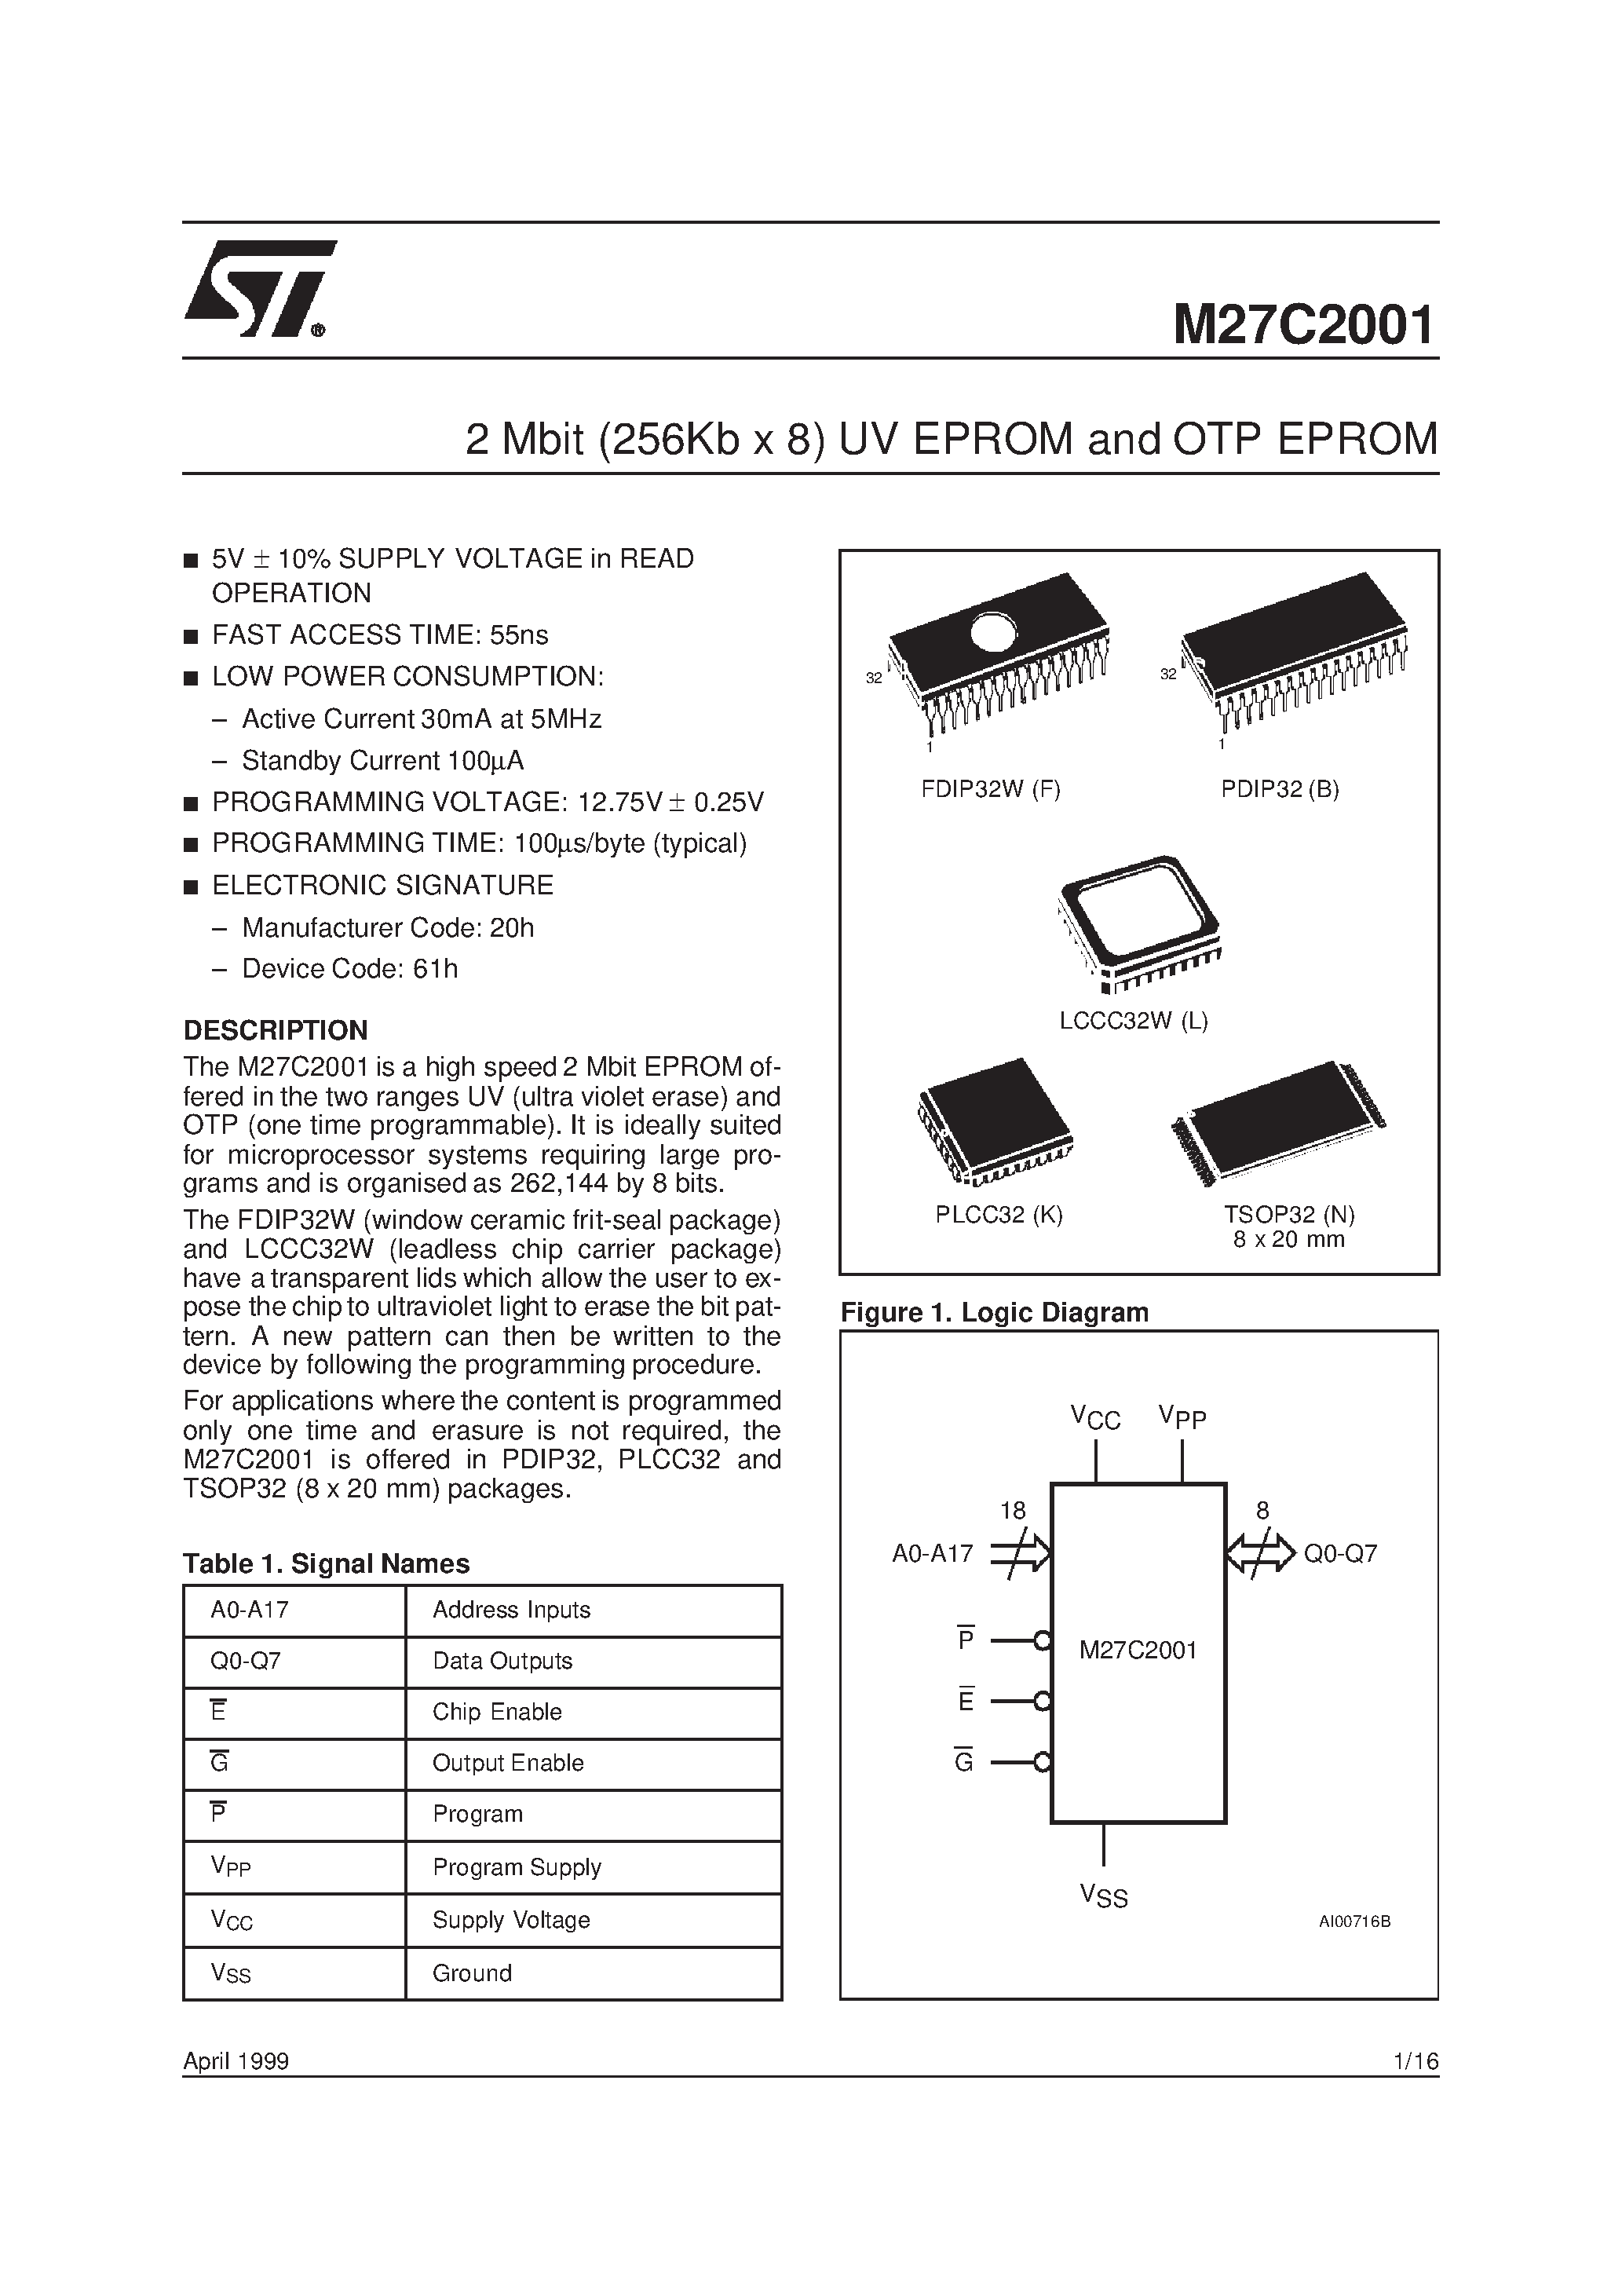 Datasheet M27C2001-10C6X - 2 Mbit 256Kb x 8 UV EPROM and OTP EPROM page 1